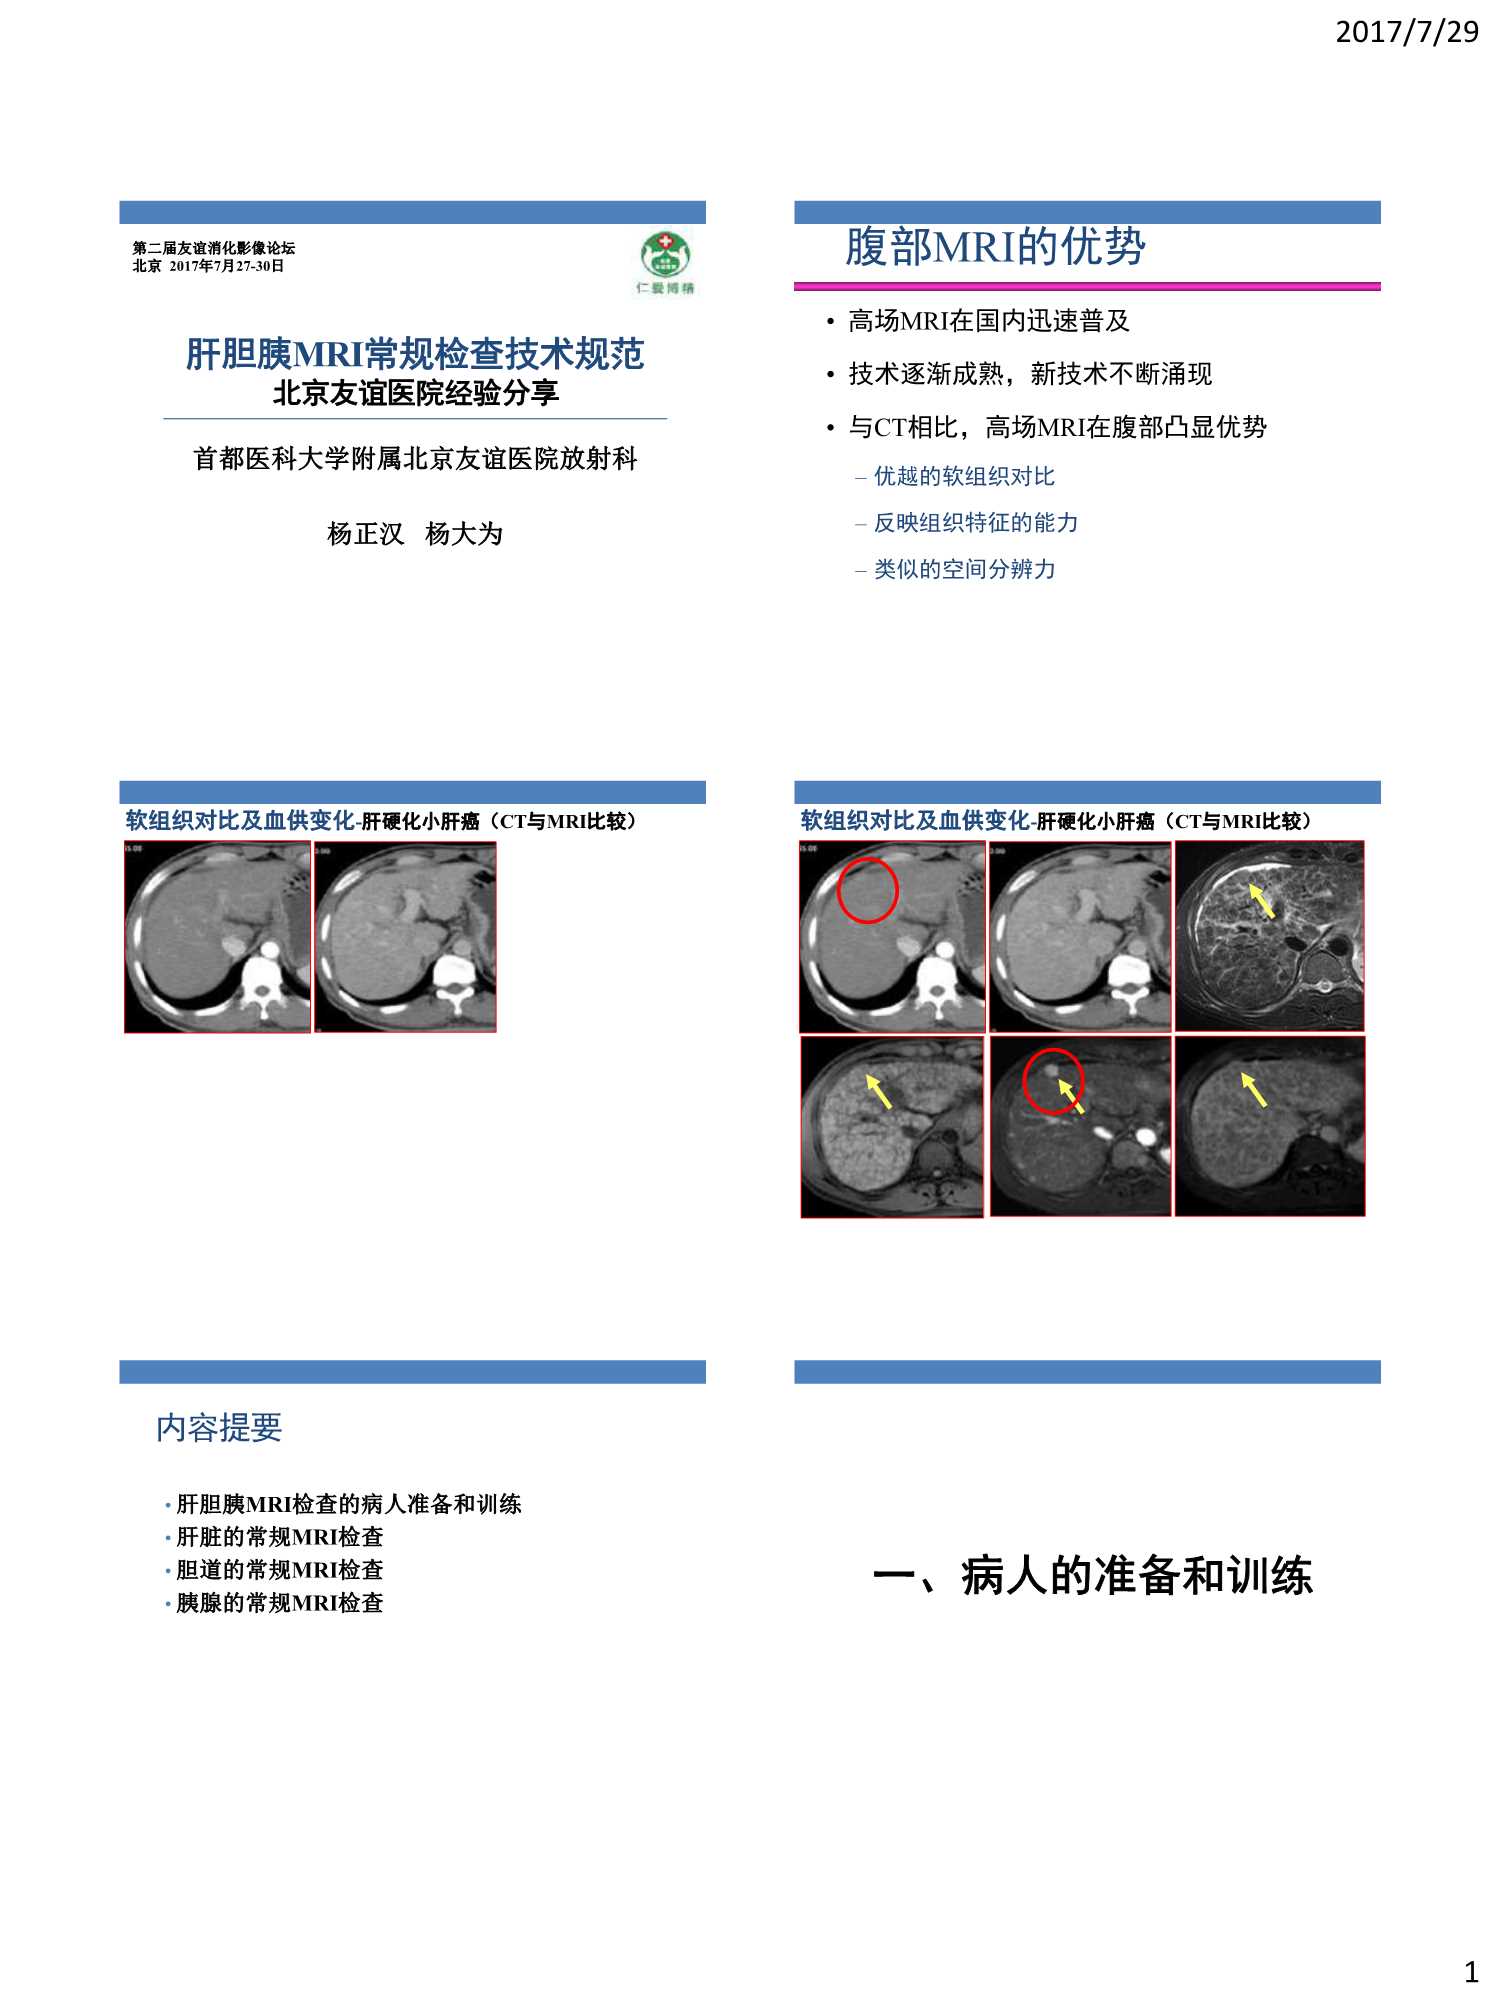 肝胆胰MRI常规检查技术规范-2017.07-14页